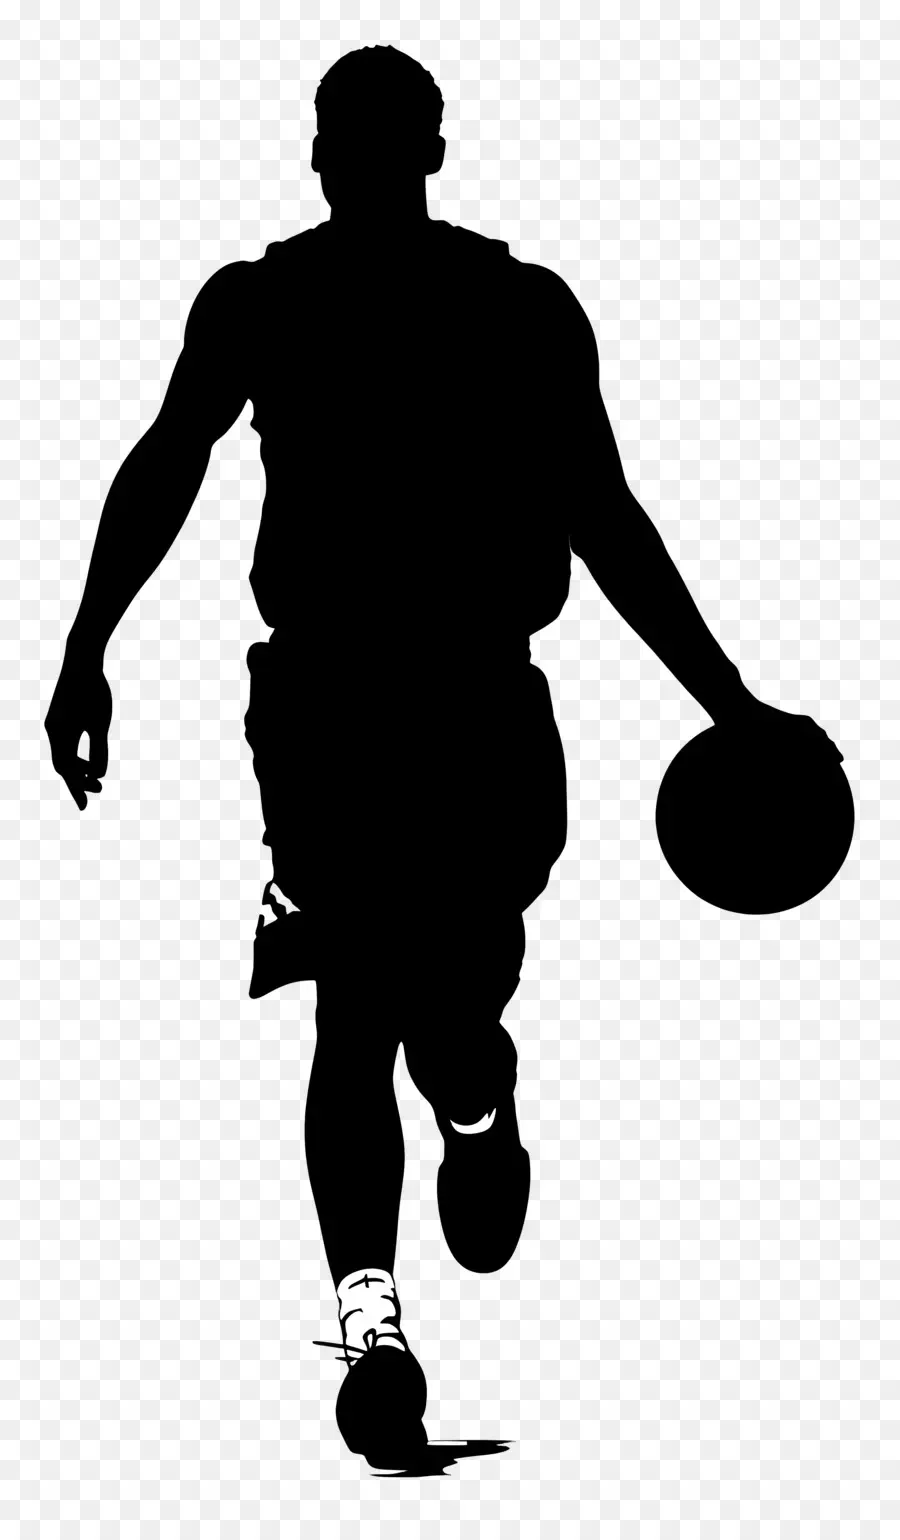 Basketballmann Silhouette Gehen Uniform Zielschatten Schatten - Person in einheitlichem unbestimmten Objekt, Schatten sichtbar